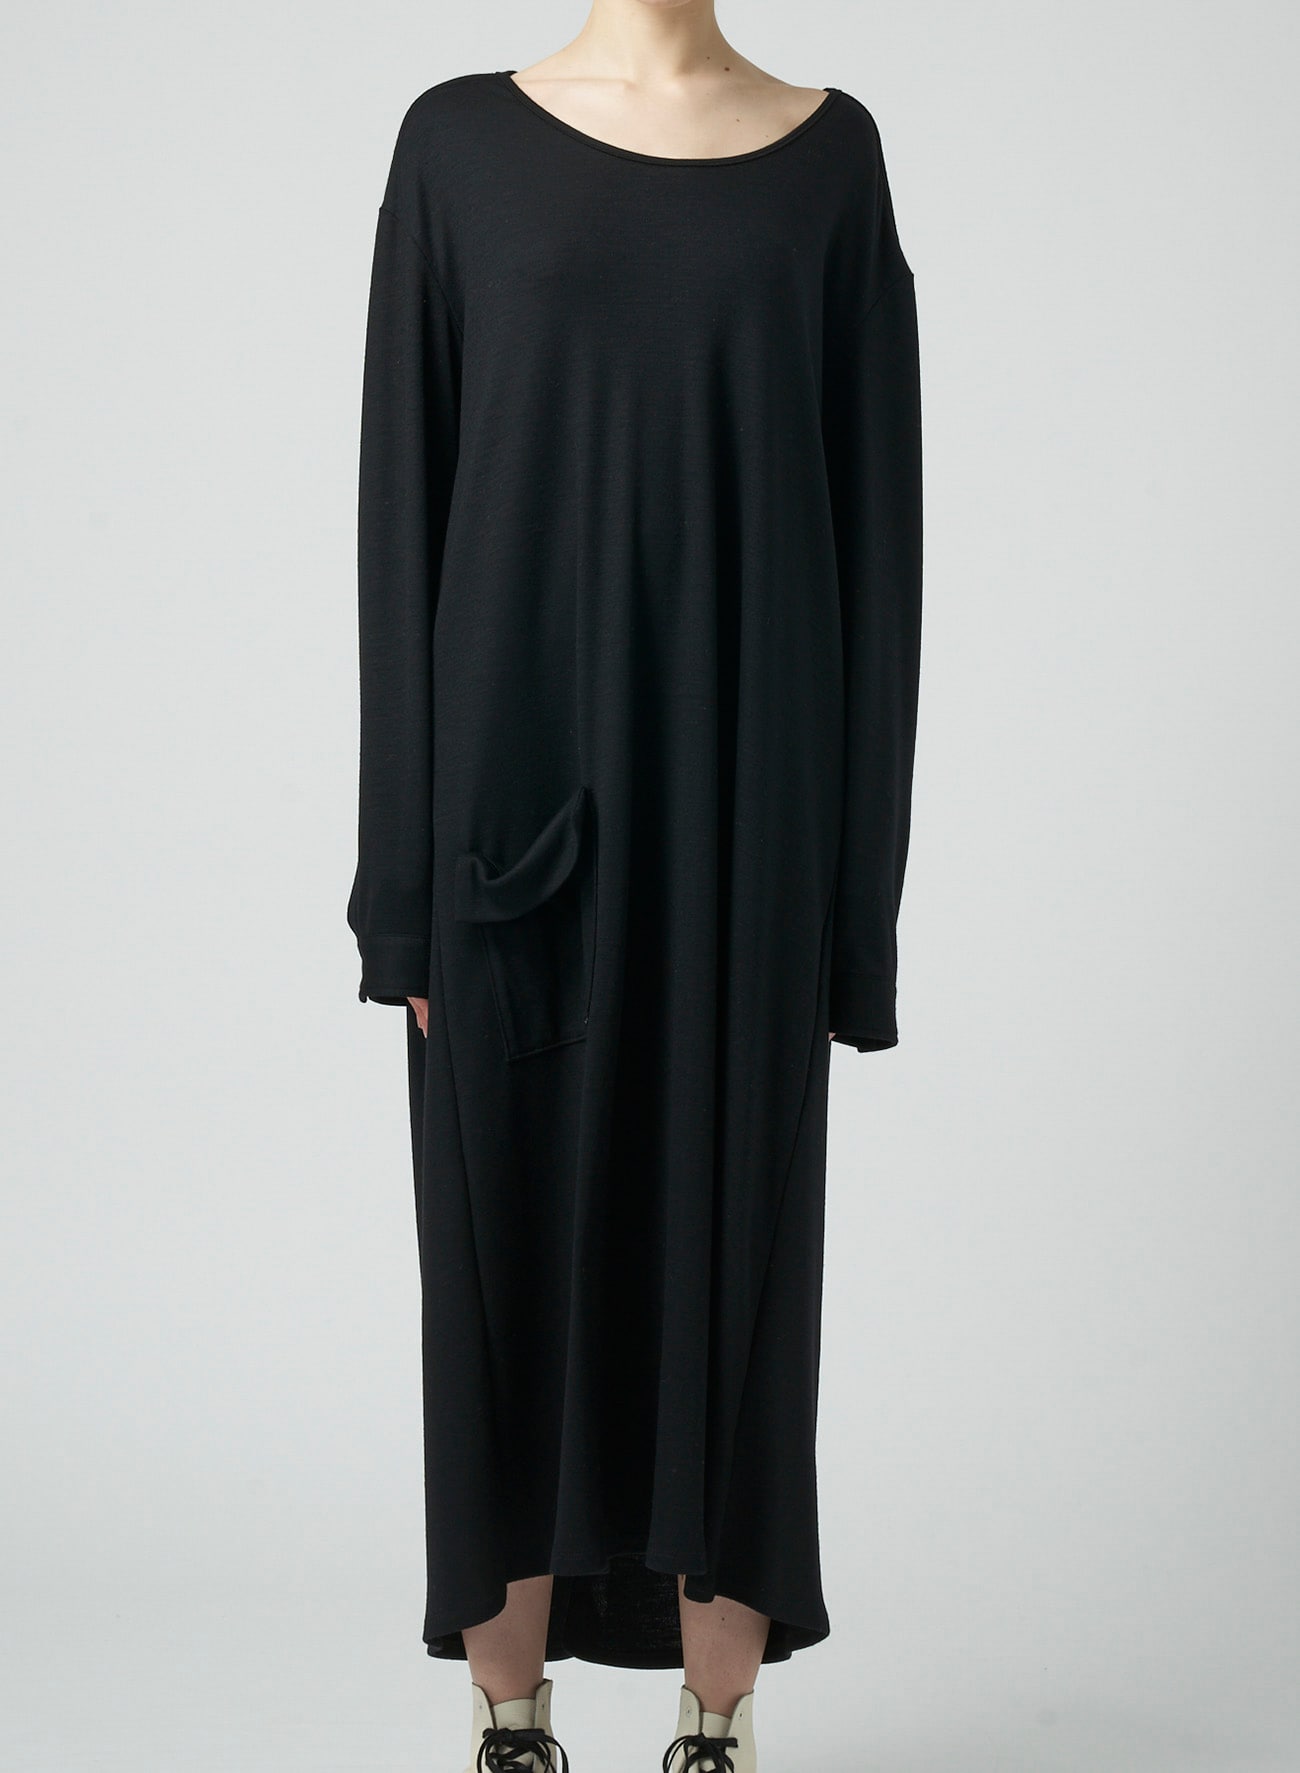 1/60 LUMINARY WOOL BACKSIDE OPENED SHIRT DRESS